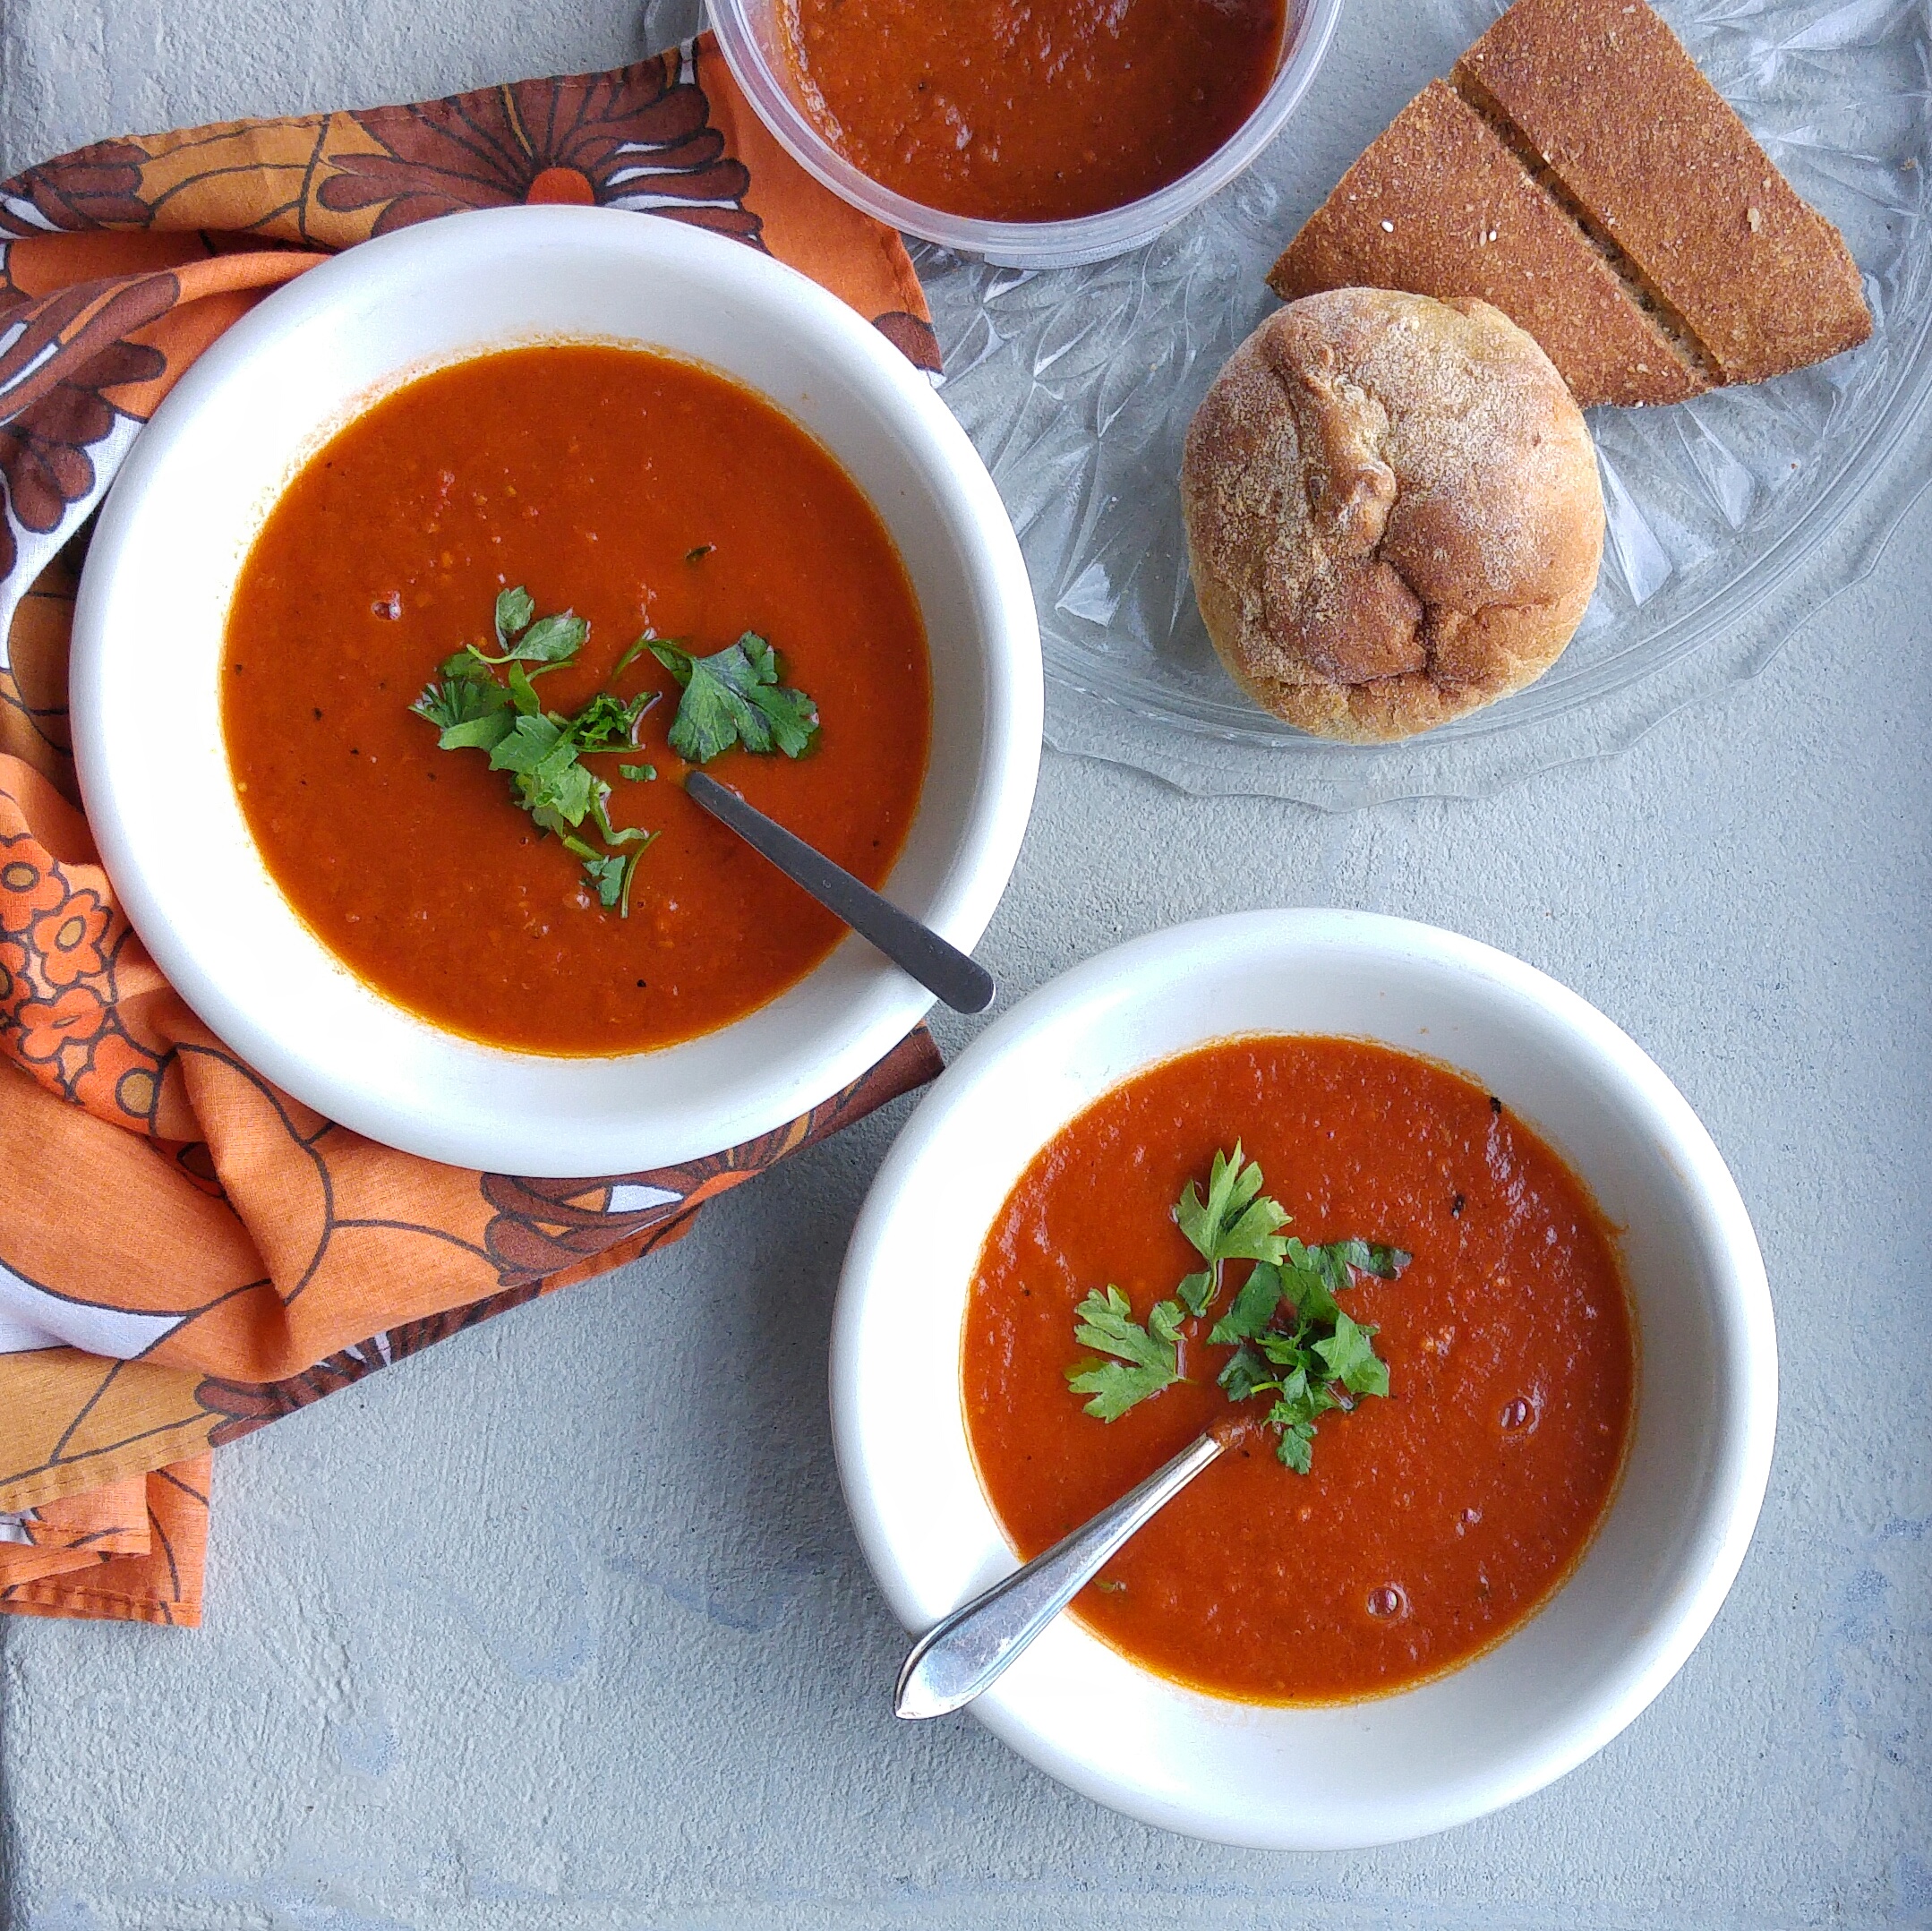 Met deze makkelijke soeprecepten maak je in heen handomdraai een verse gezonde tomatensoep. Snel en simpel!